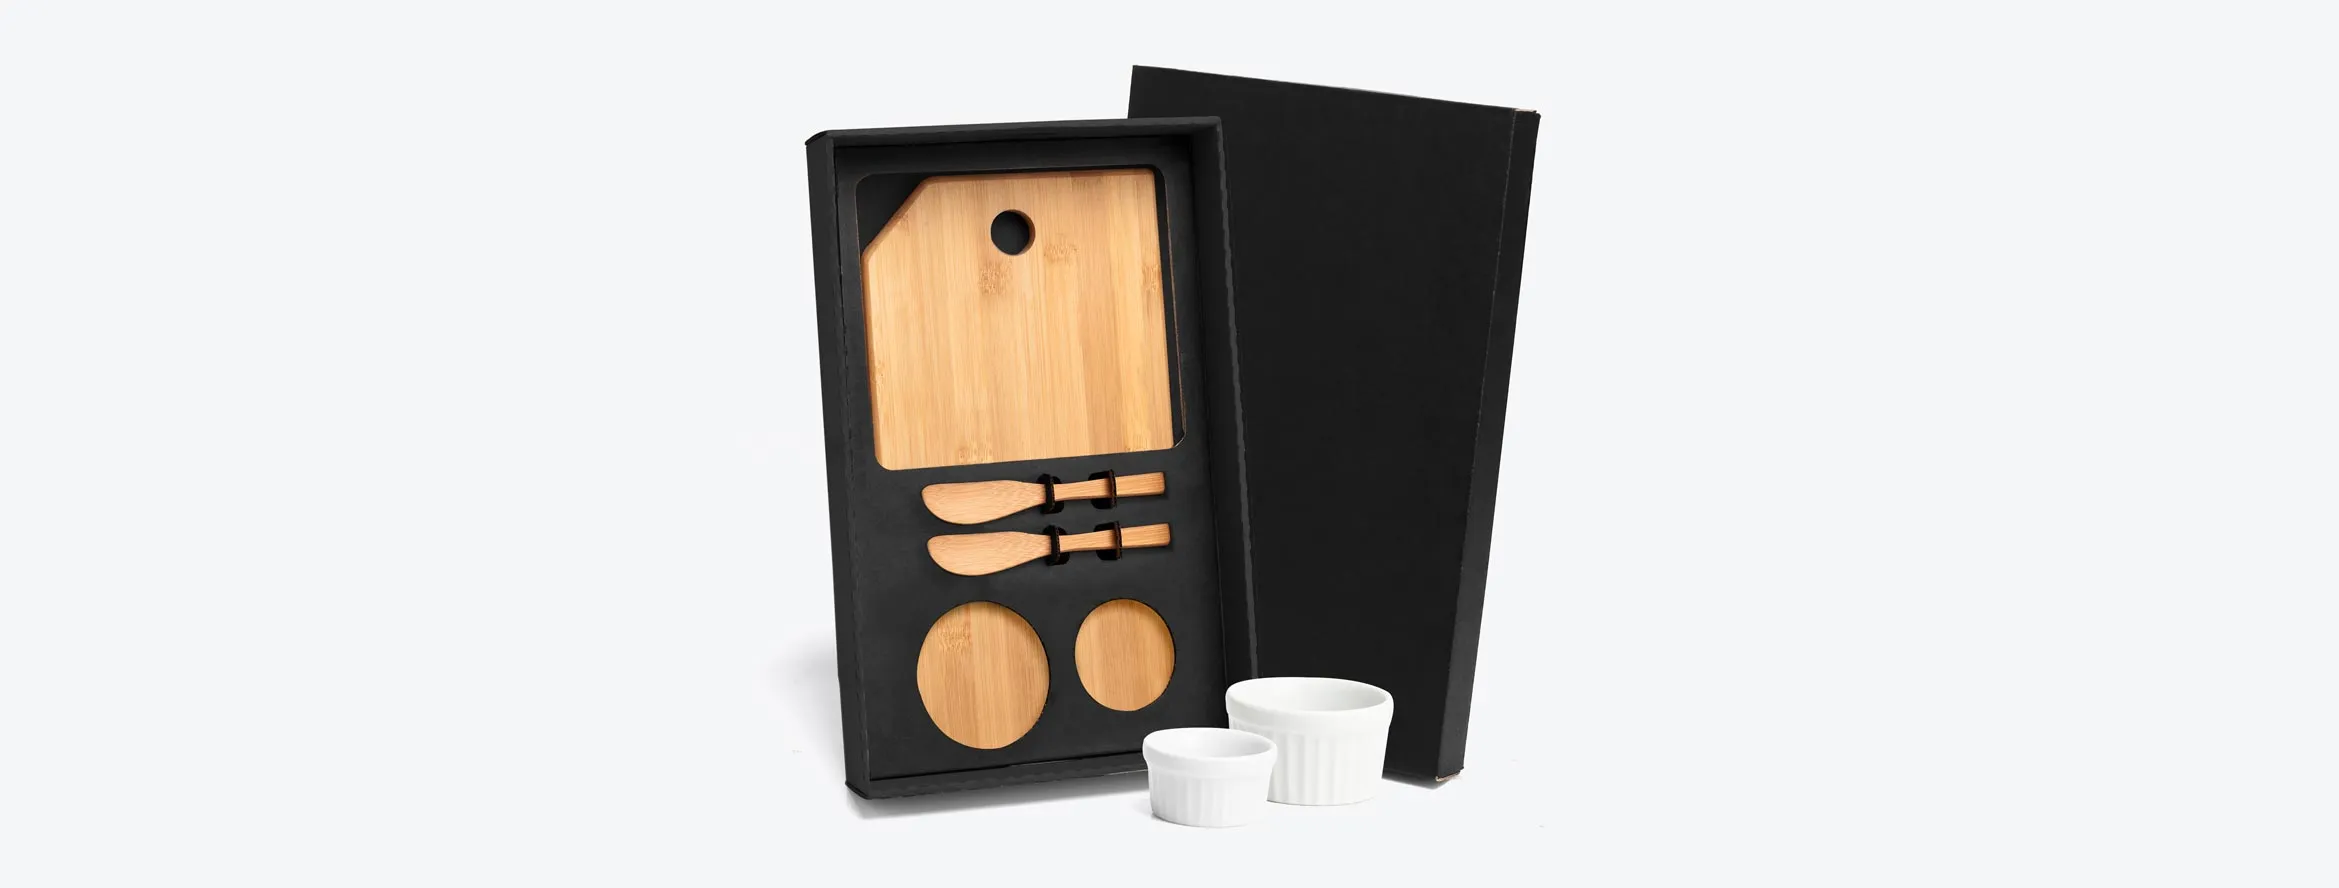 Kit para petisco contendo tábua com furo e duas espátulas 14cm em bambu; Dois ramekins, um pequeno e um mini em porcelana. Estão perfeitamente acomodados em uma caixa para presentear.